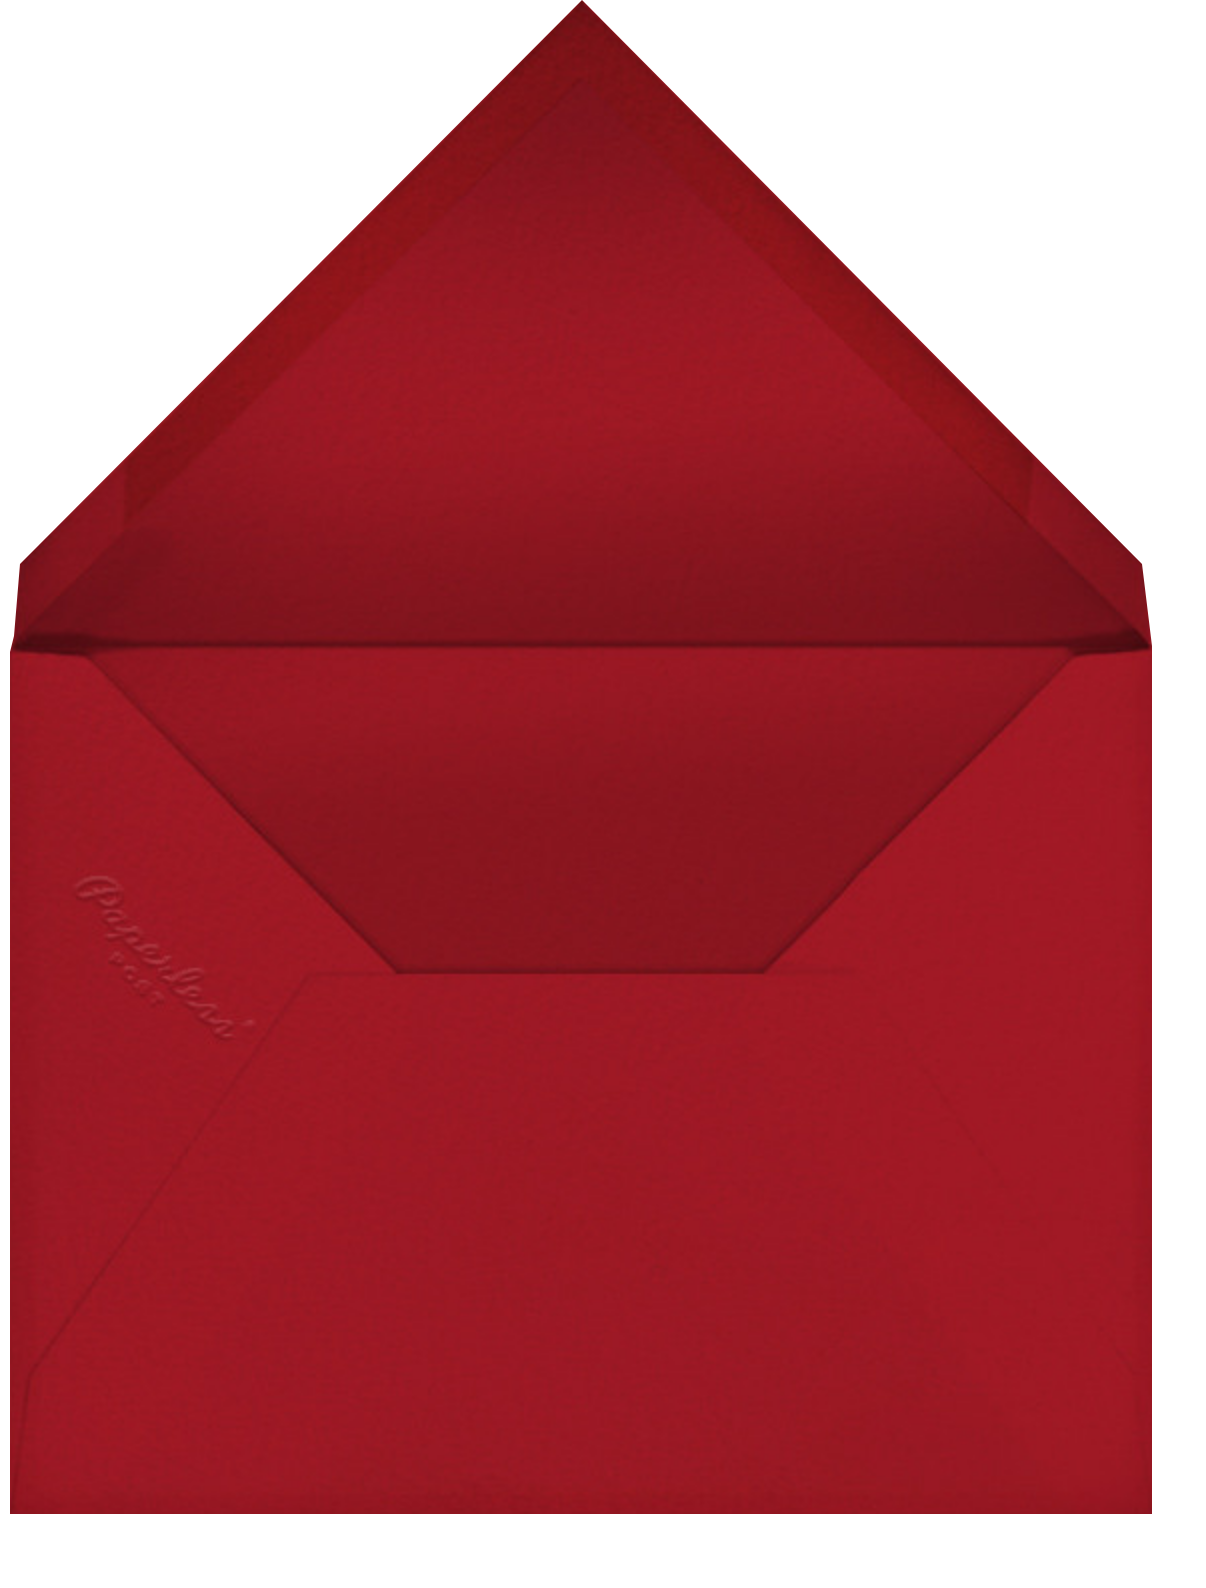 Yule Tidings - Paperless Post - Envelope